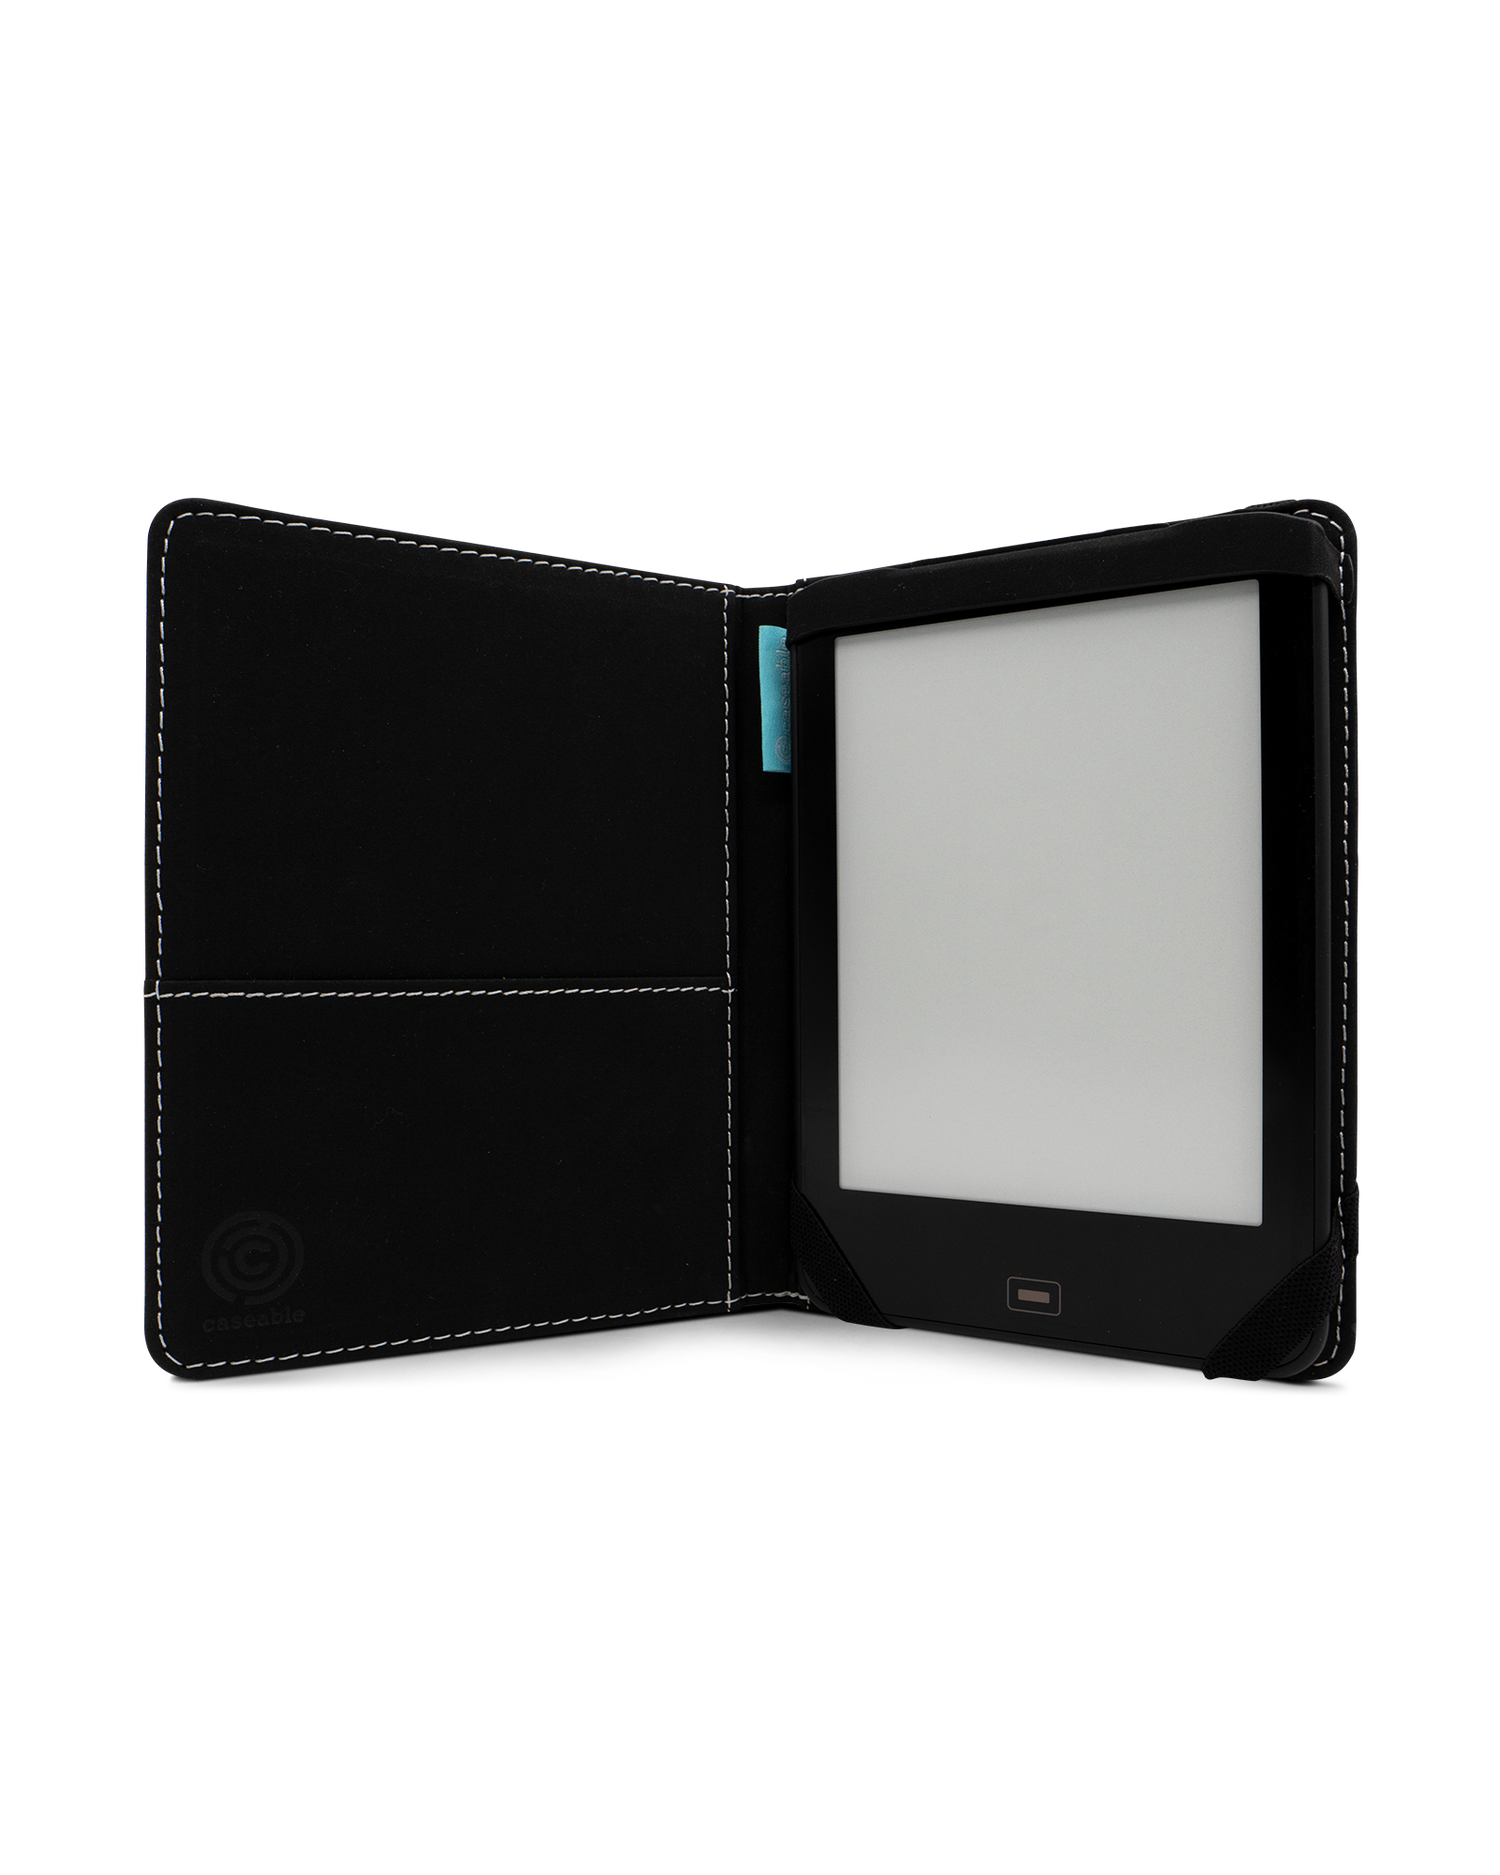 Neon Sharks eBook Reader Hülle für tolino vision 1 bis 4 HD: Geöffnet Innenansicht